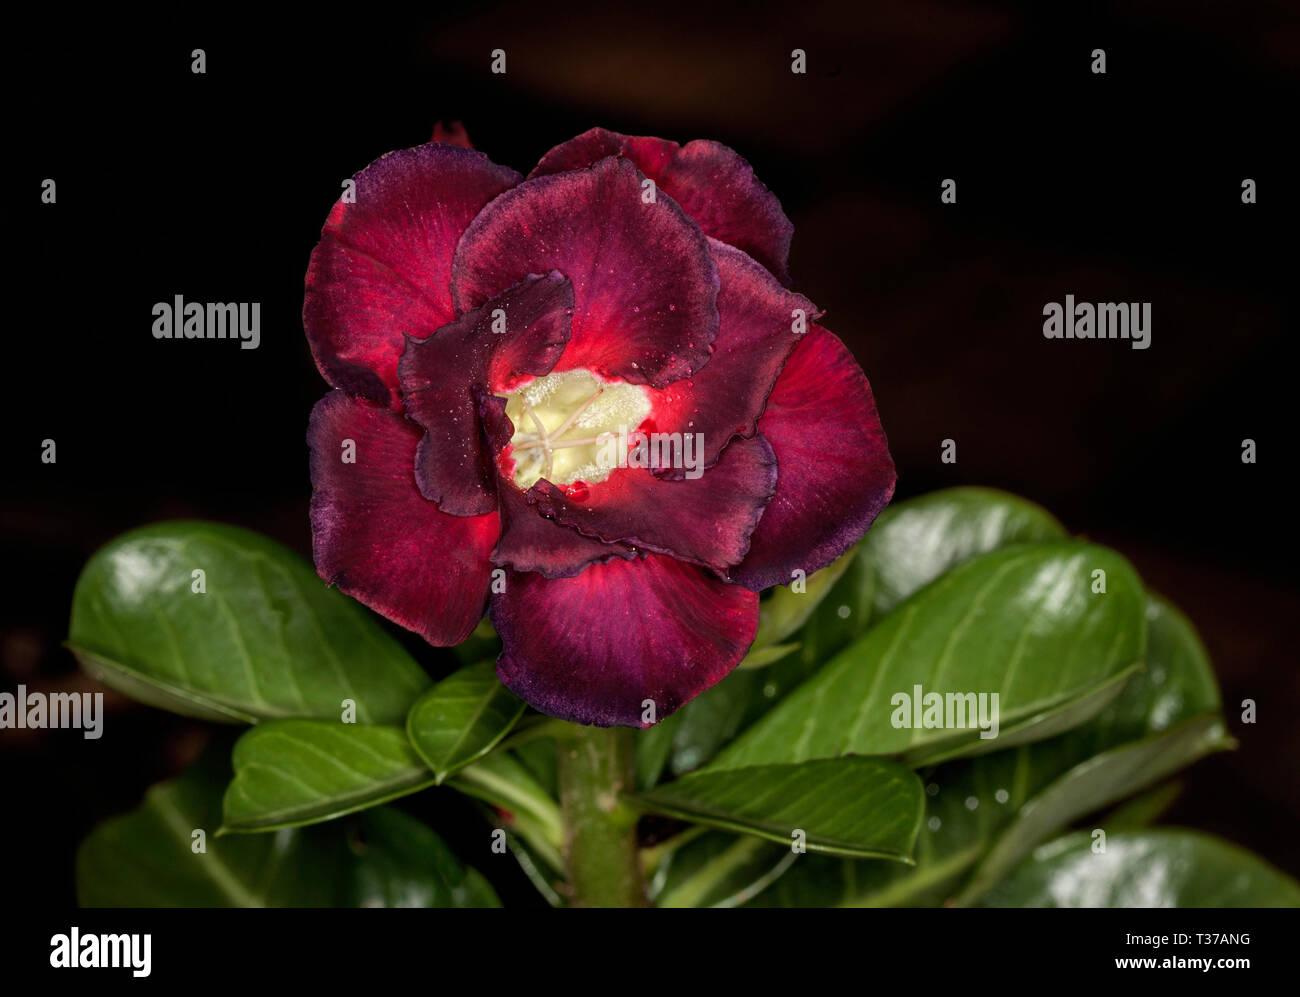 Superbe et insolite double rouge foncé / fleur noire et feuilles vertes d'Adenium obesum 'Black Dragon', African Desert Rose sur fond sombre Banque D'Images